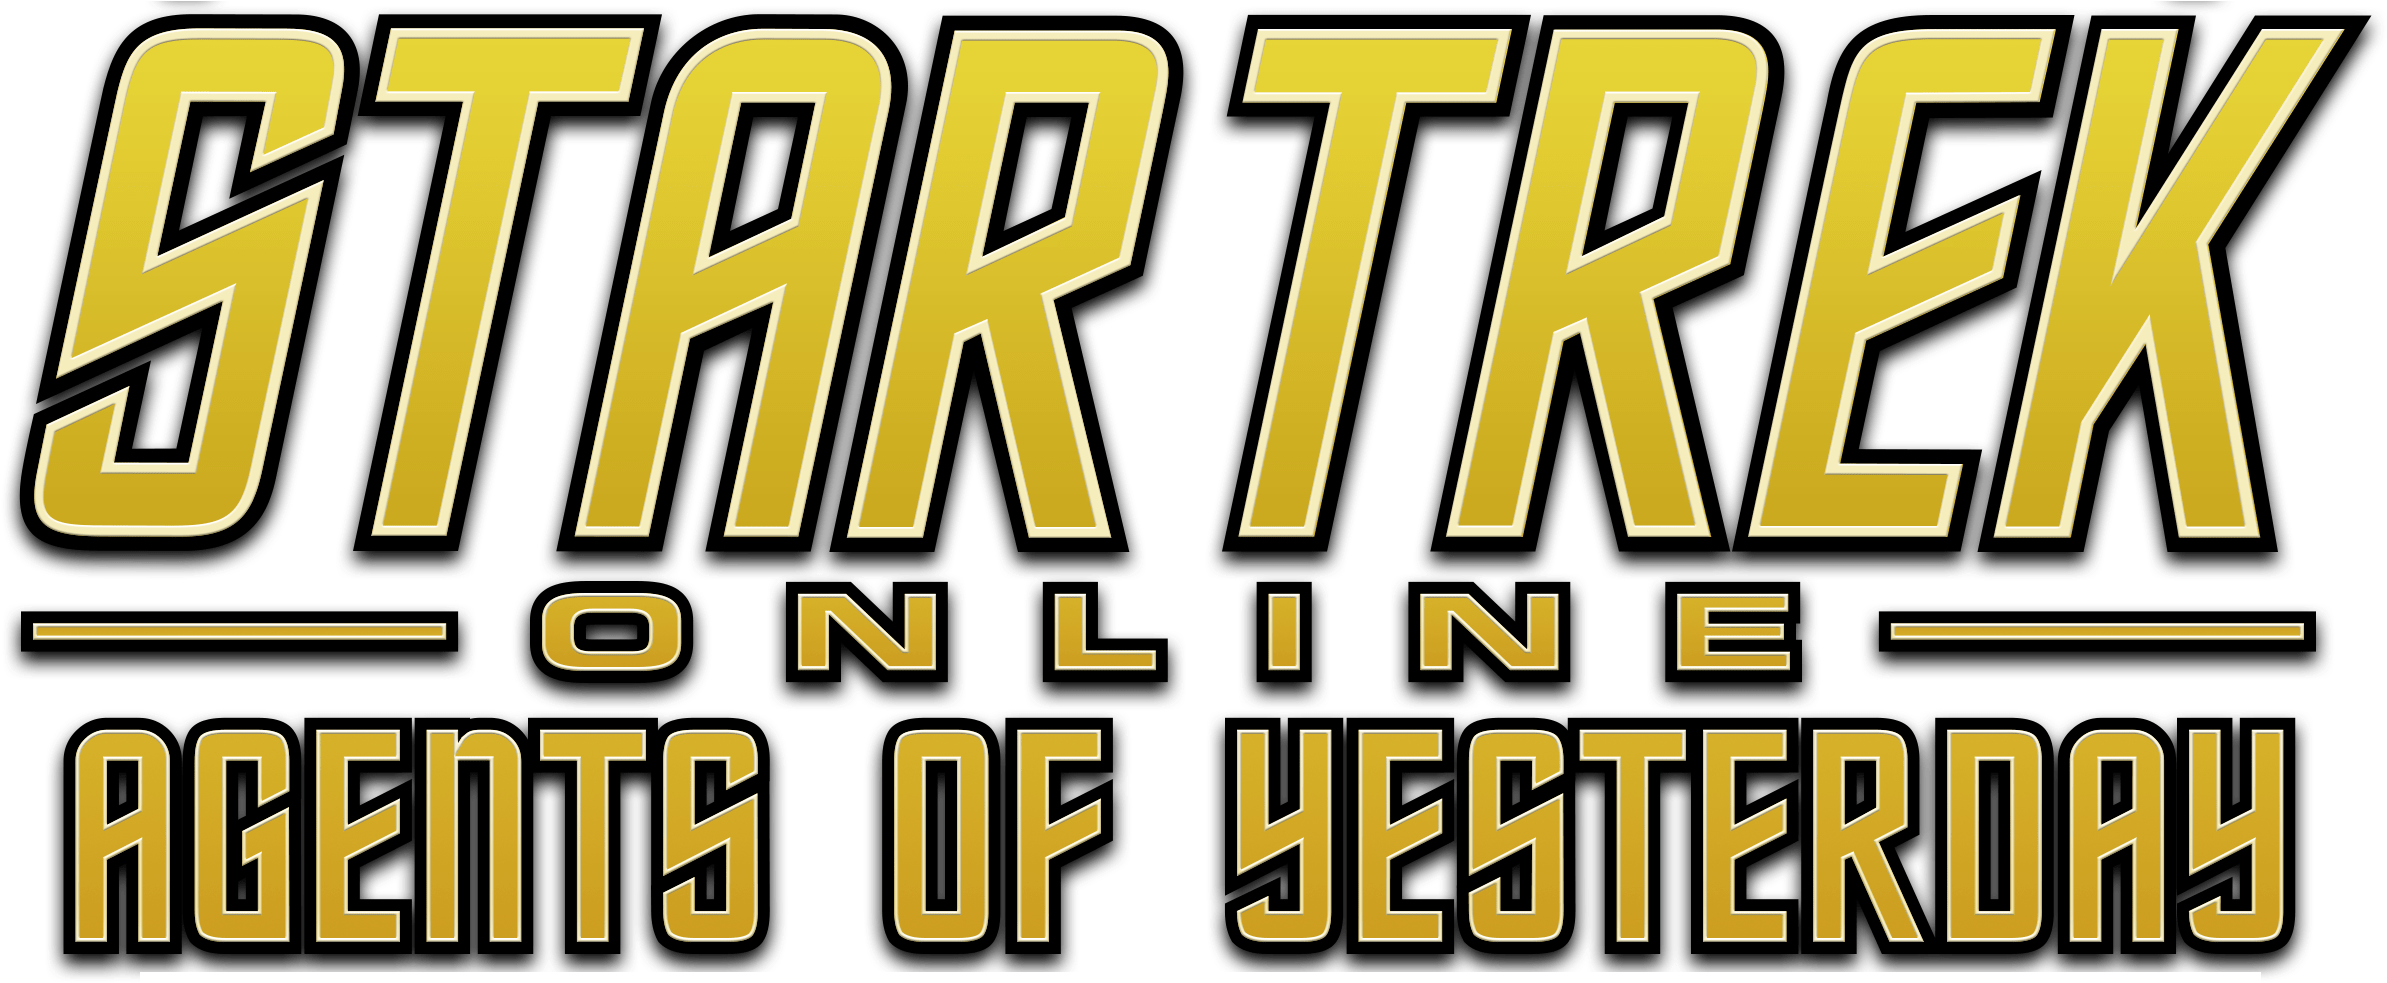 Star Trek Online - October 25 (3300x2000), Png Download